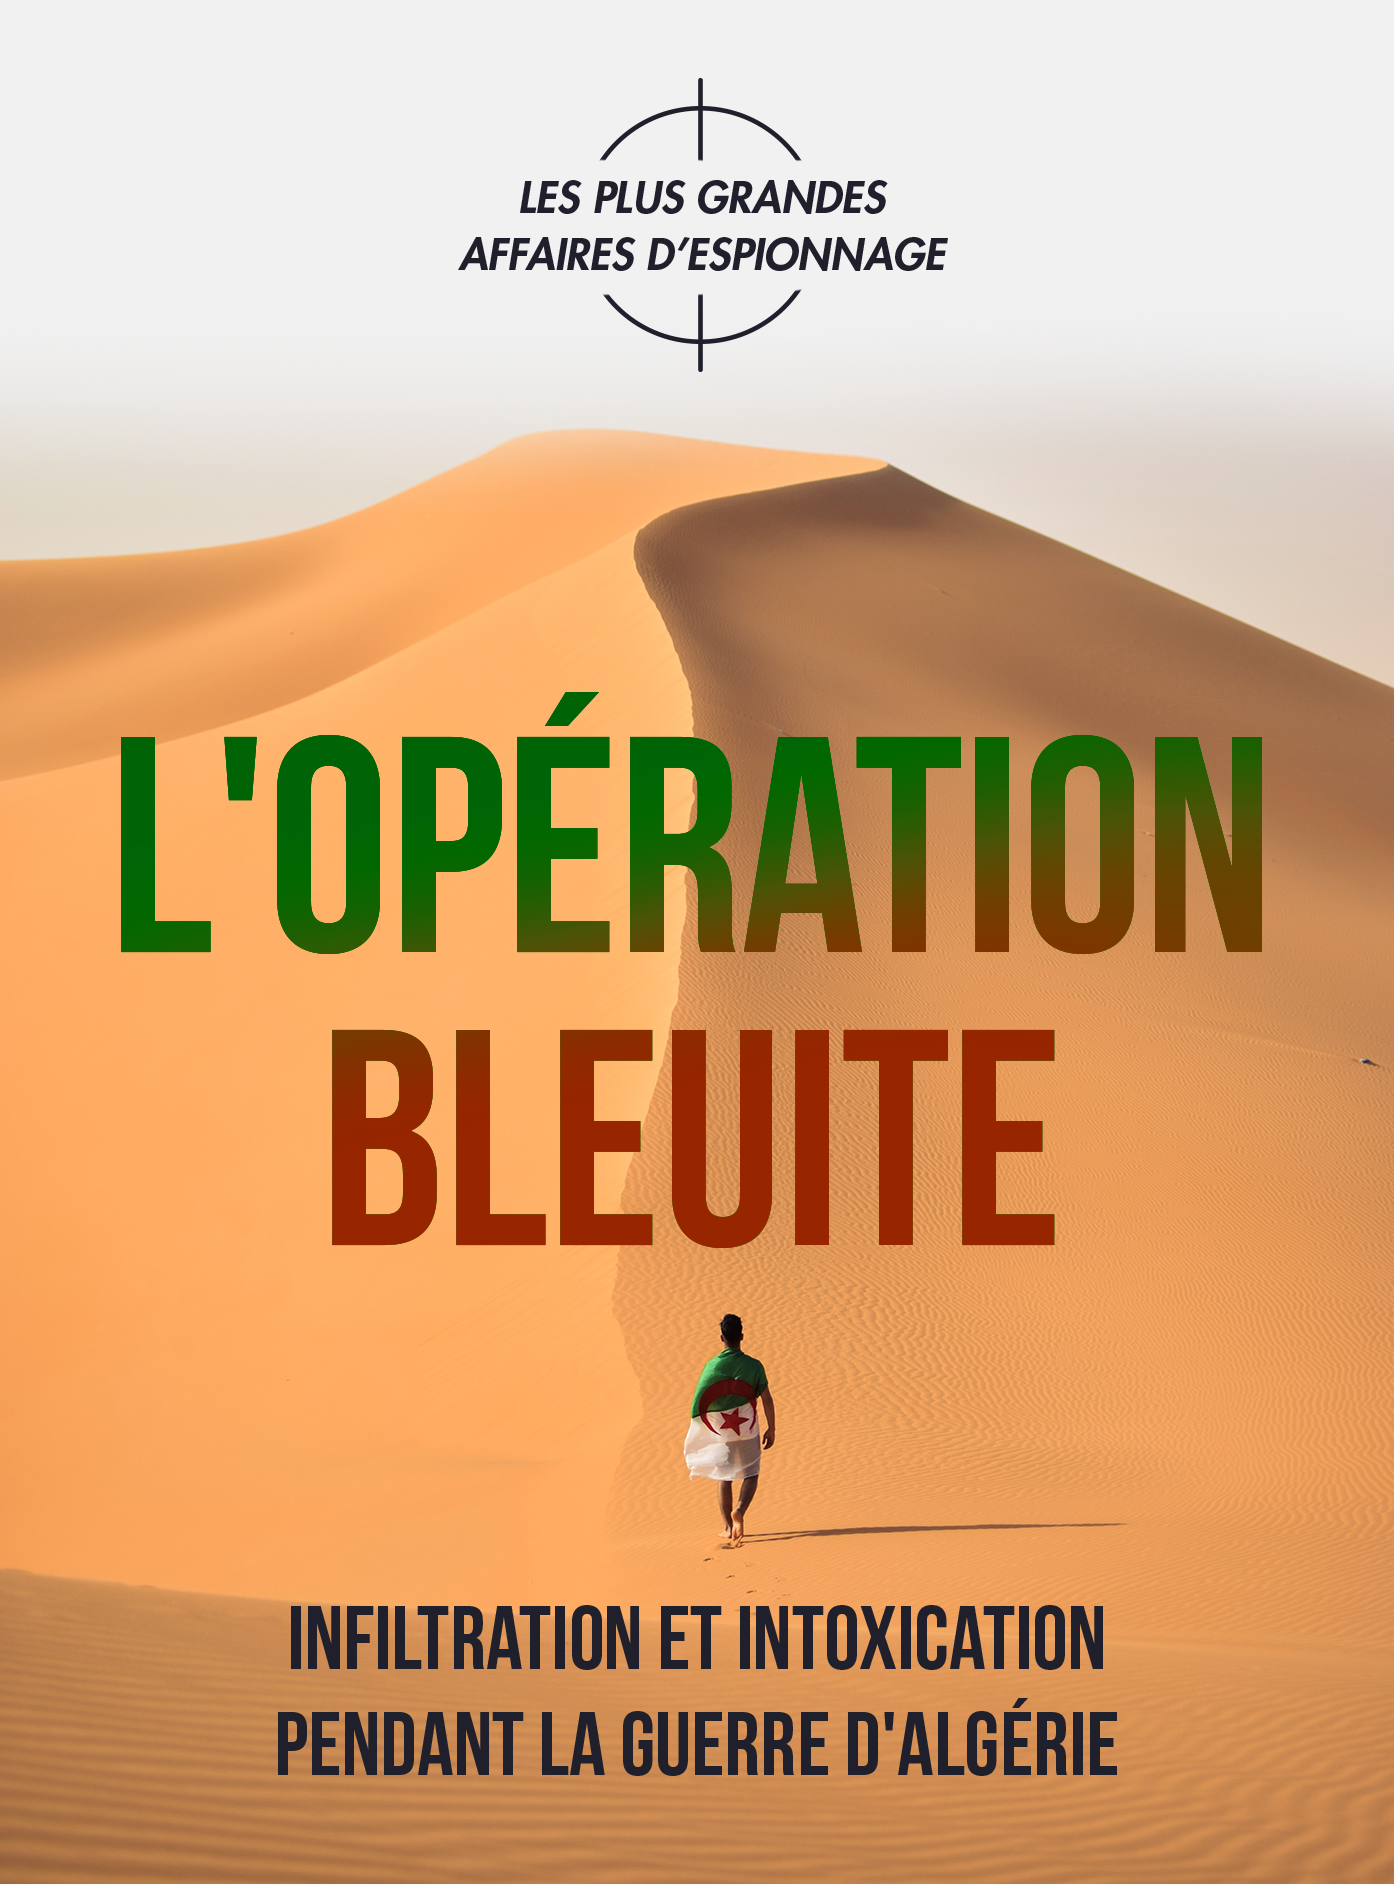 L’opération Bleuite, infiltration et intoxication pendant la Guerre d’Algérie